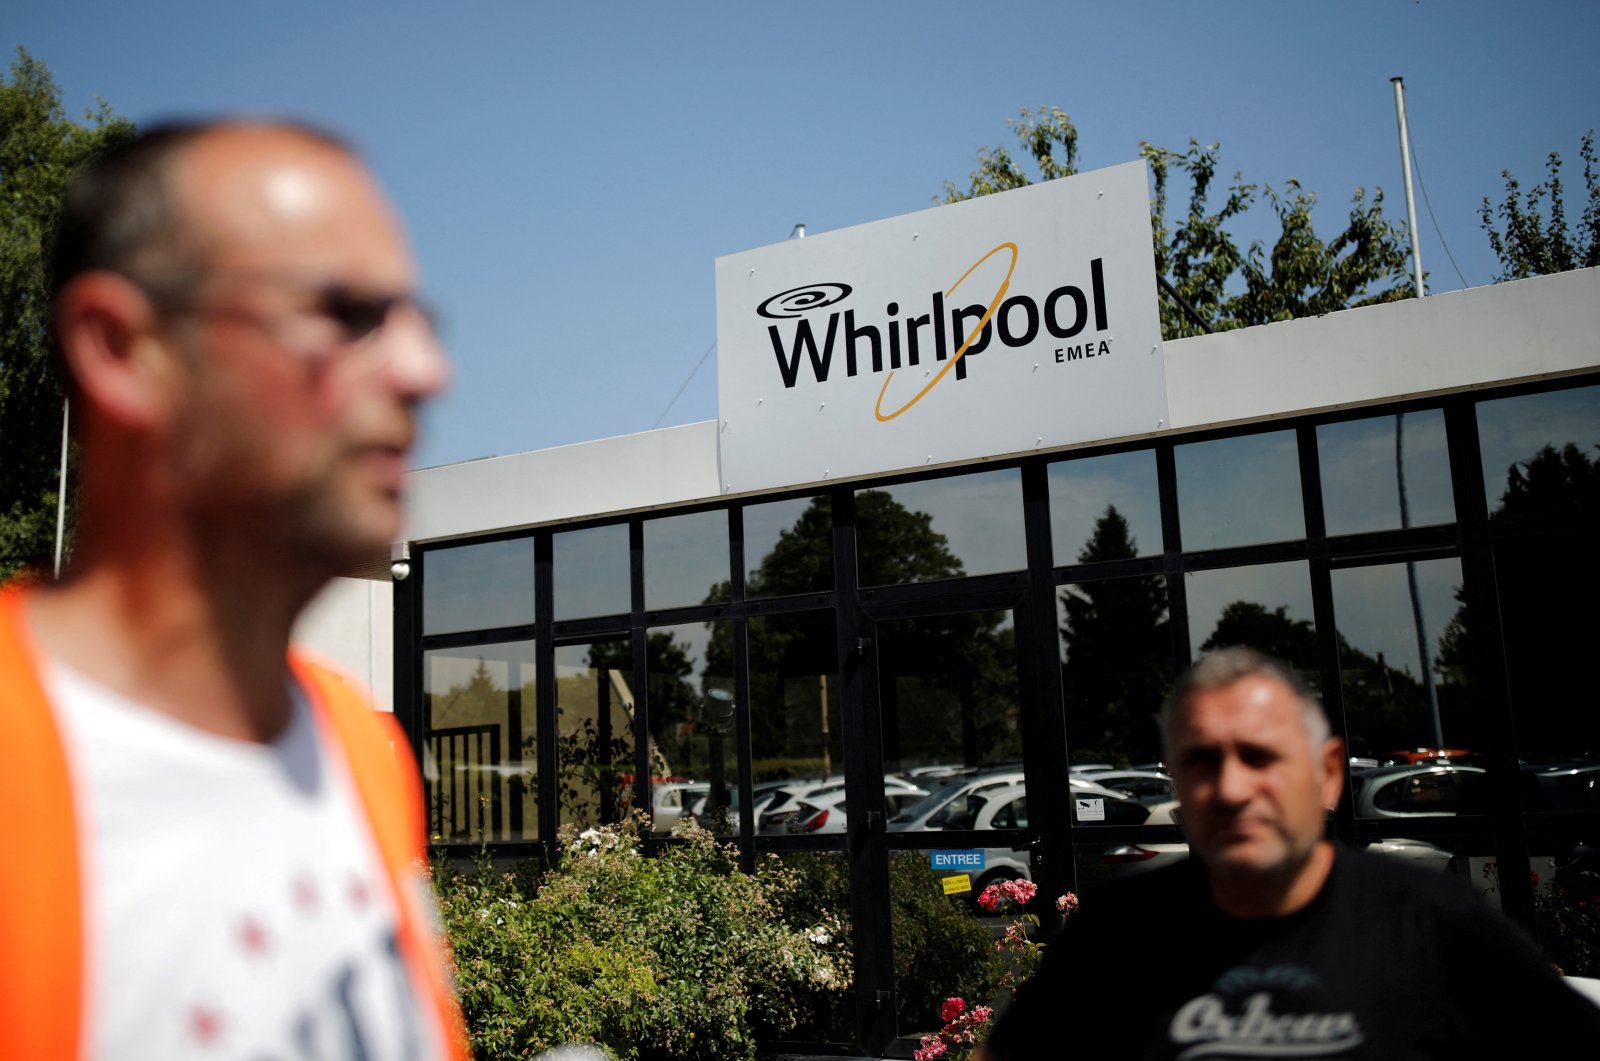 Avrupa Birliği, Türk beyaz eşya üreticisi Arçelik'in Whirlpool ile olan anlaşmasını onayladı